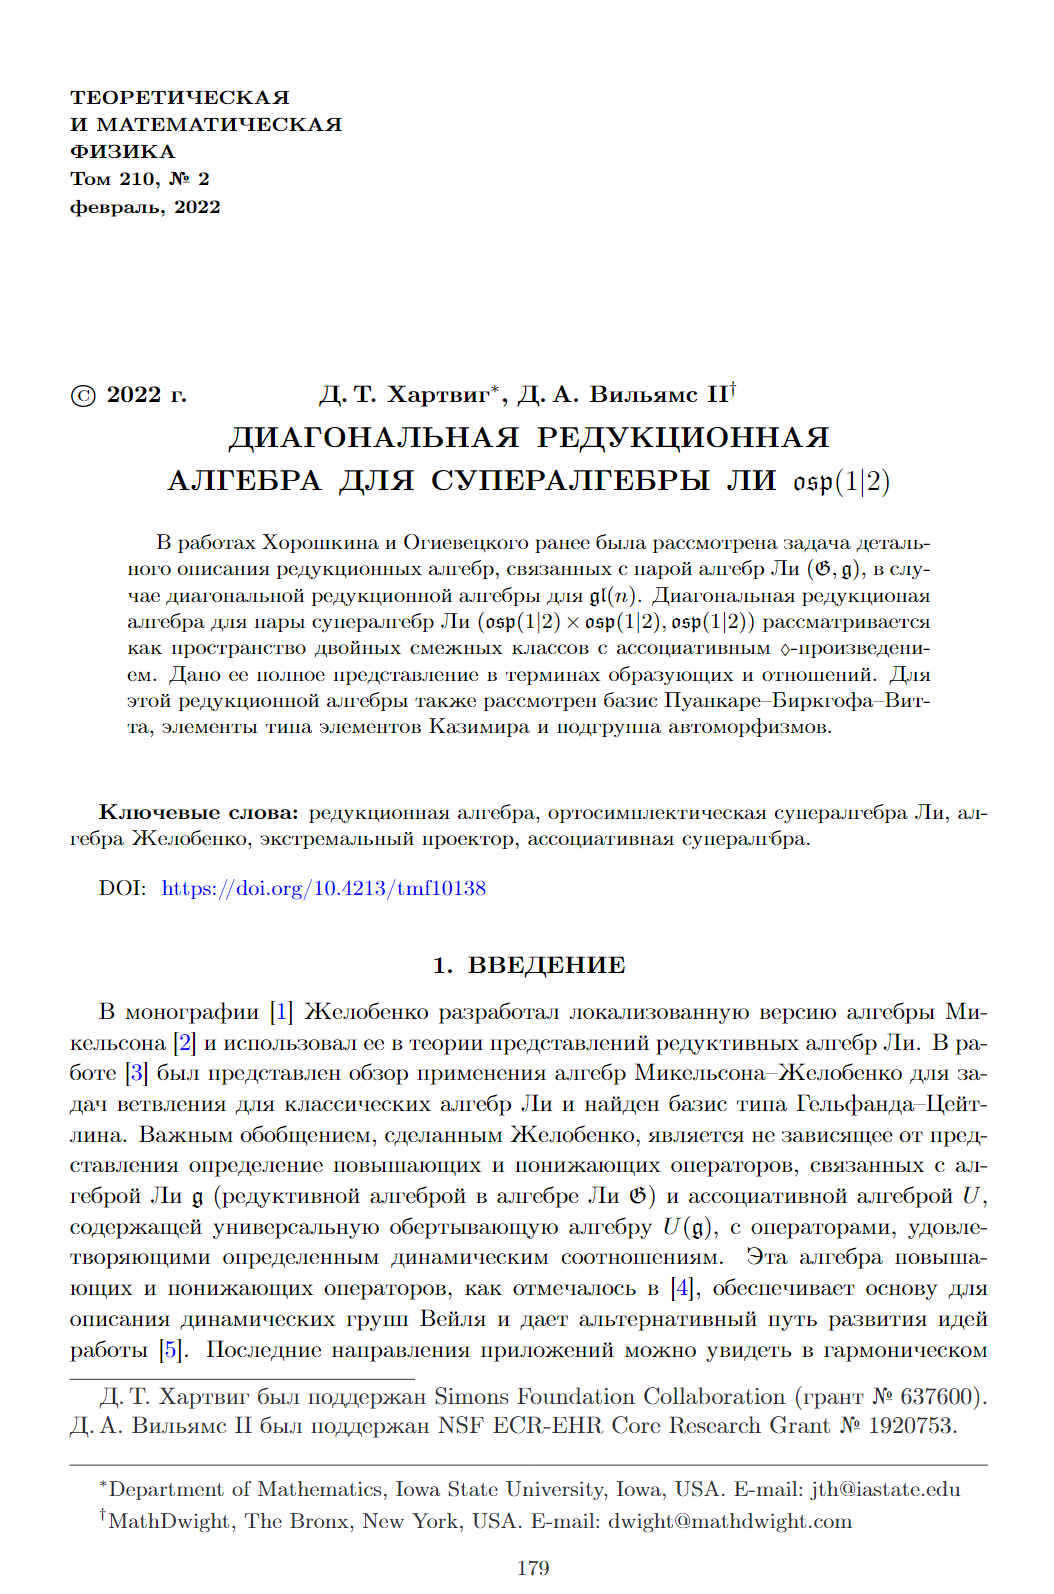 Paper 1: Диагональная редукционная алгебра для супералгебры Ли osp(1|2)